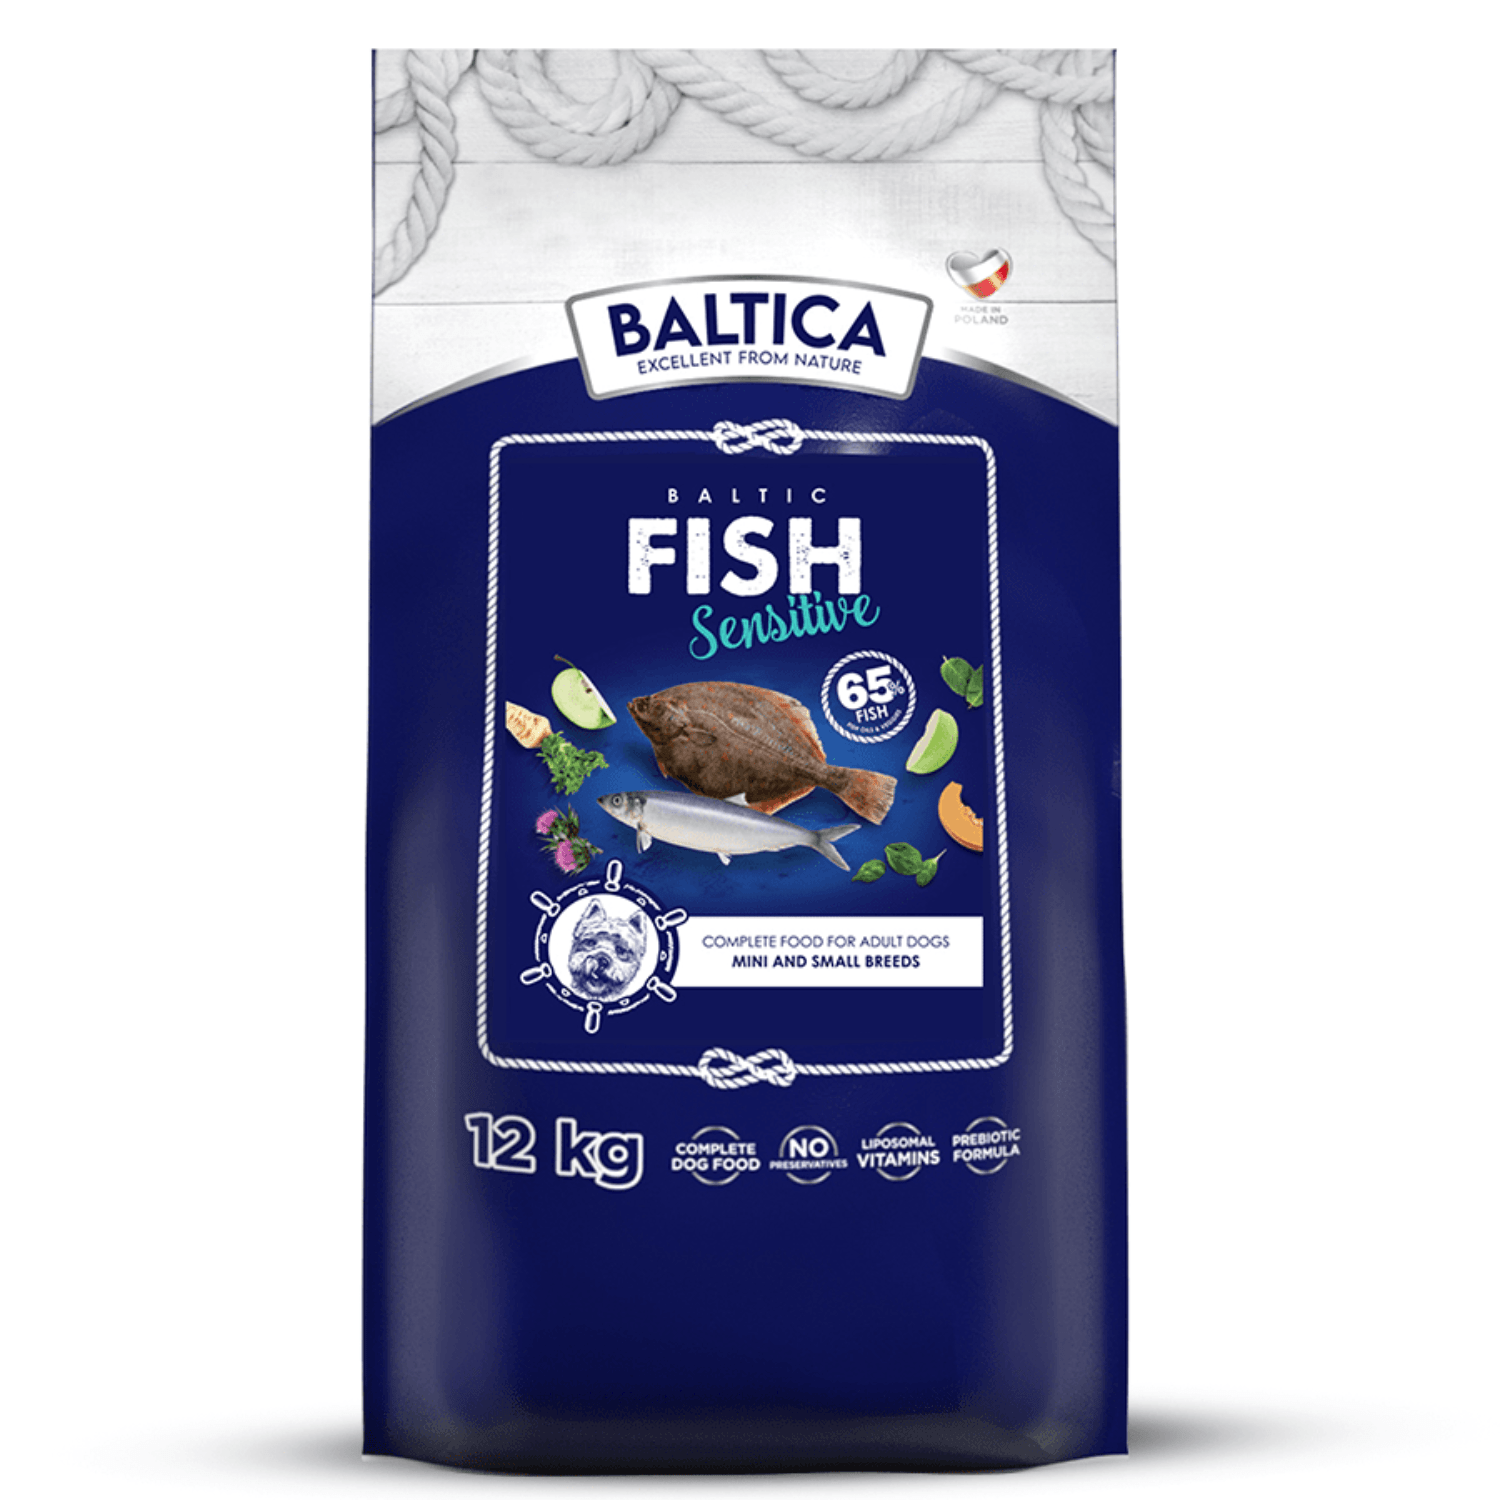 Baltica Baltic Fish Sensitive (małe rasy) - 30 dni